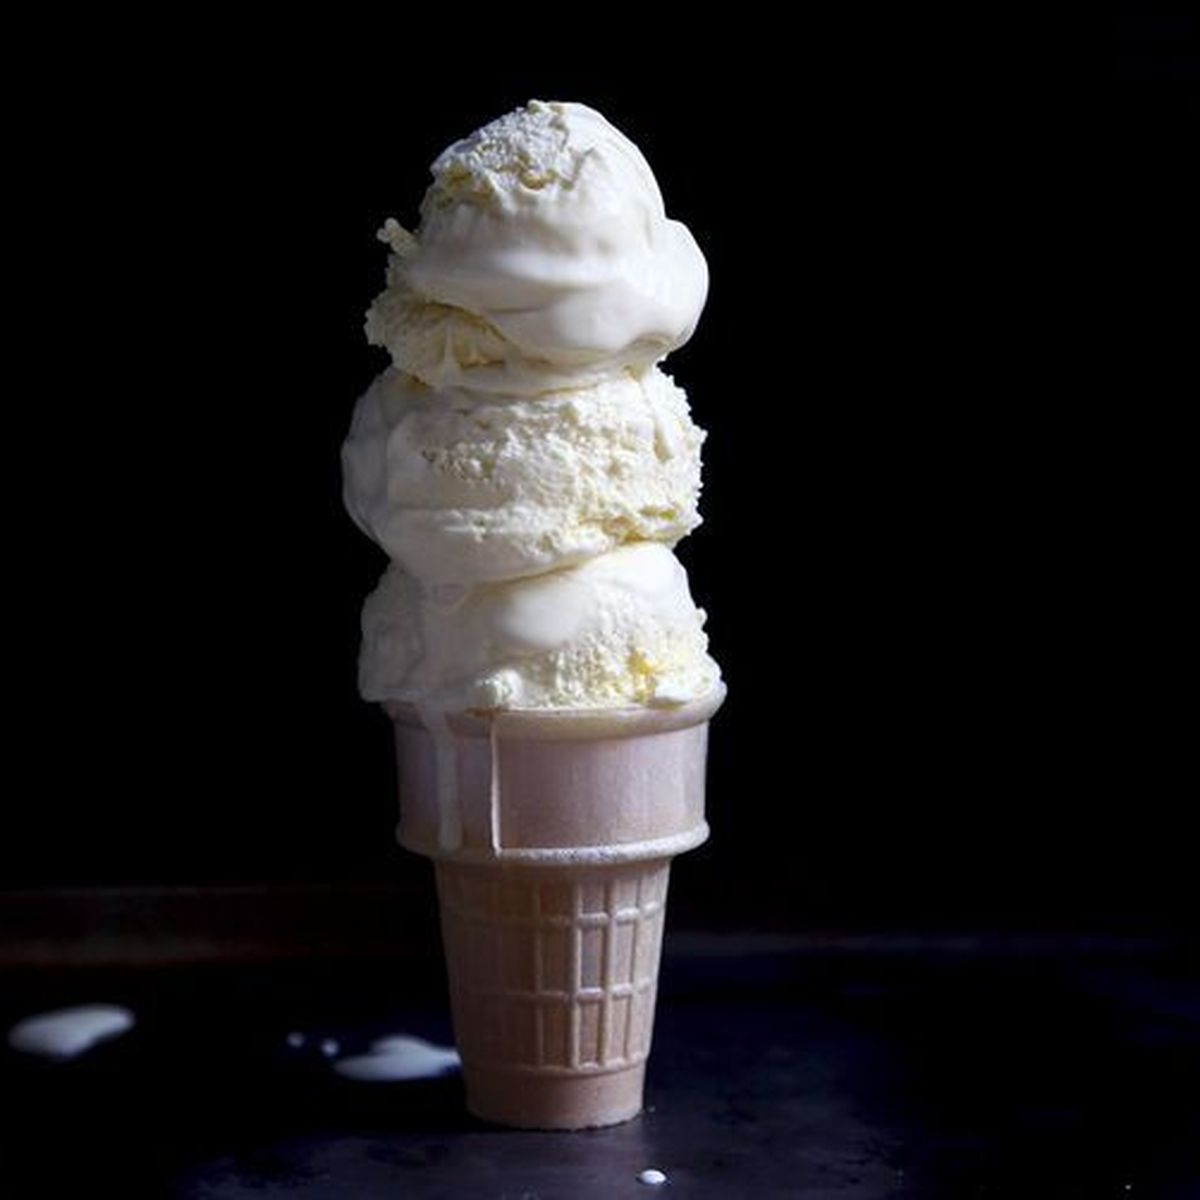 How to Scoop Ice Cream